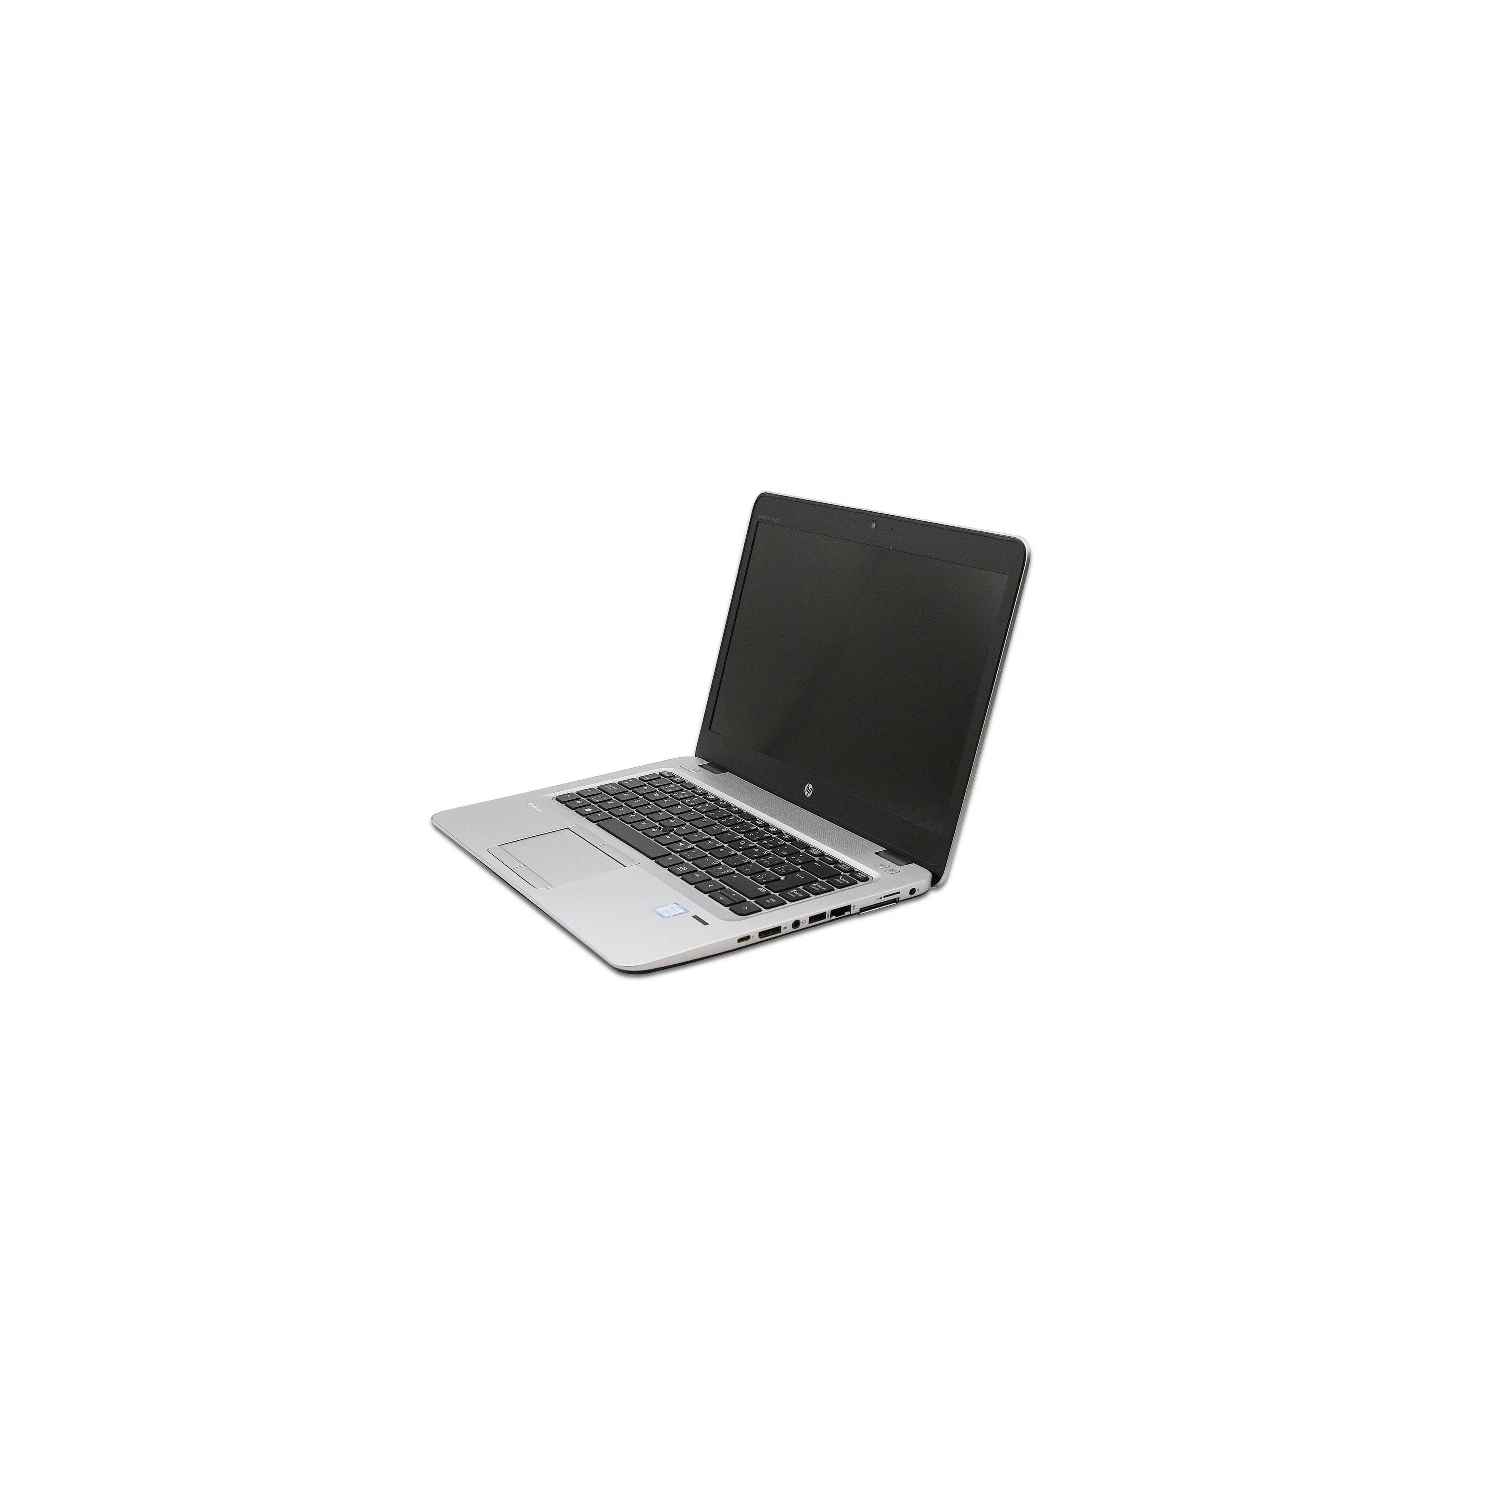 Refurbished (Good) - HP EliteBook 840 G3 i5 6300U 8GB 240 GB SSD WIN10 Pro